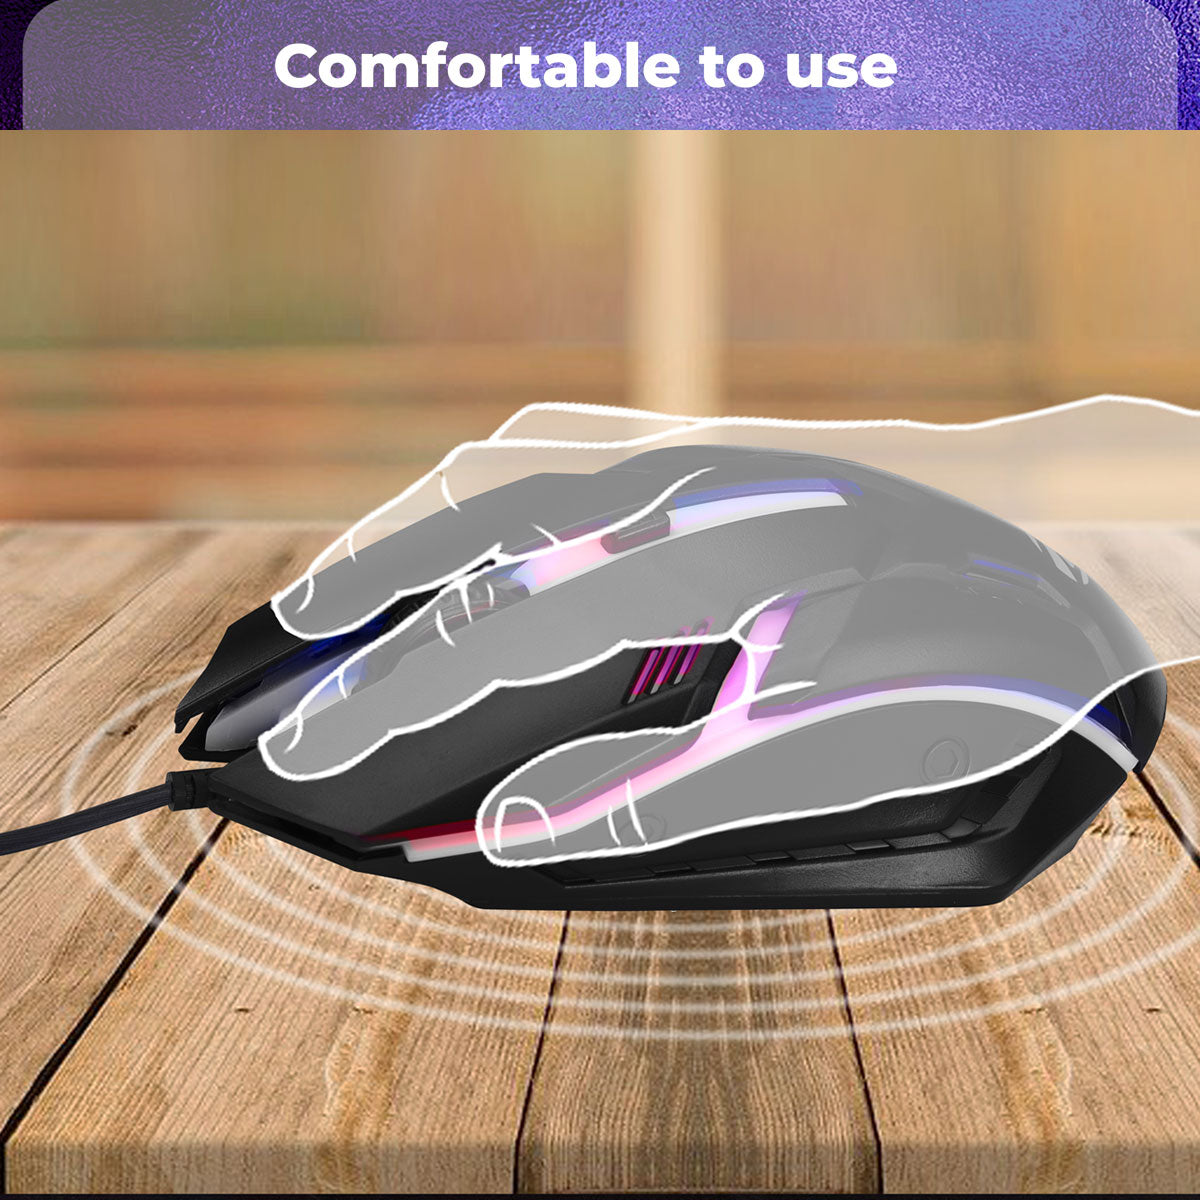 Zeb-UZi - Gaming Mouse - Zebronics